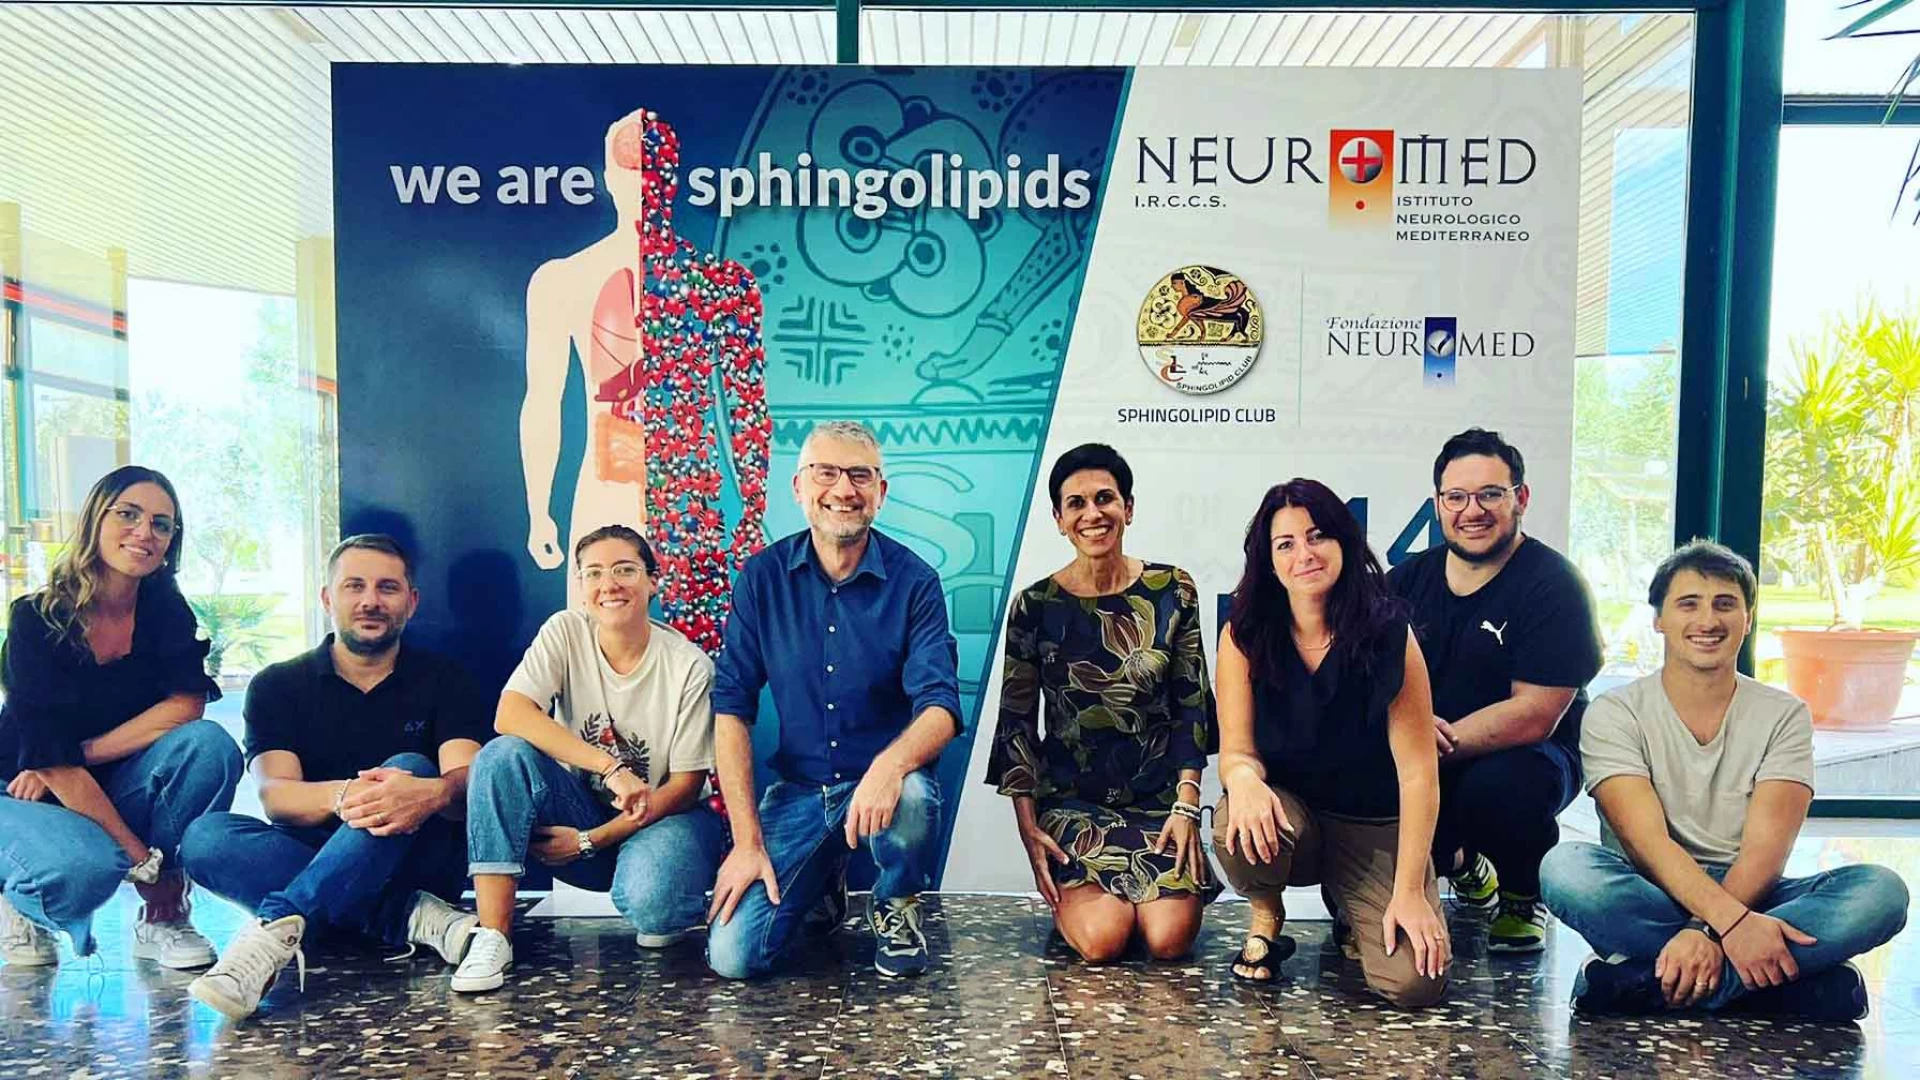 Al Neuromed un meeting internazionale sugli sfingolipidi, molecole fondamentali per il funzionamento delle cellule